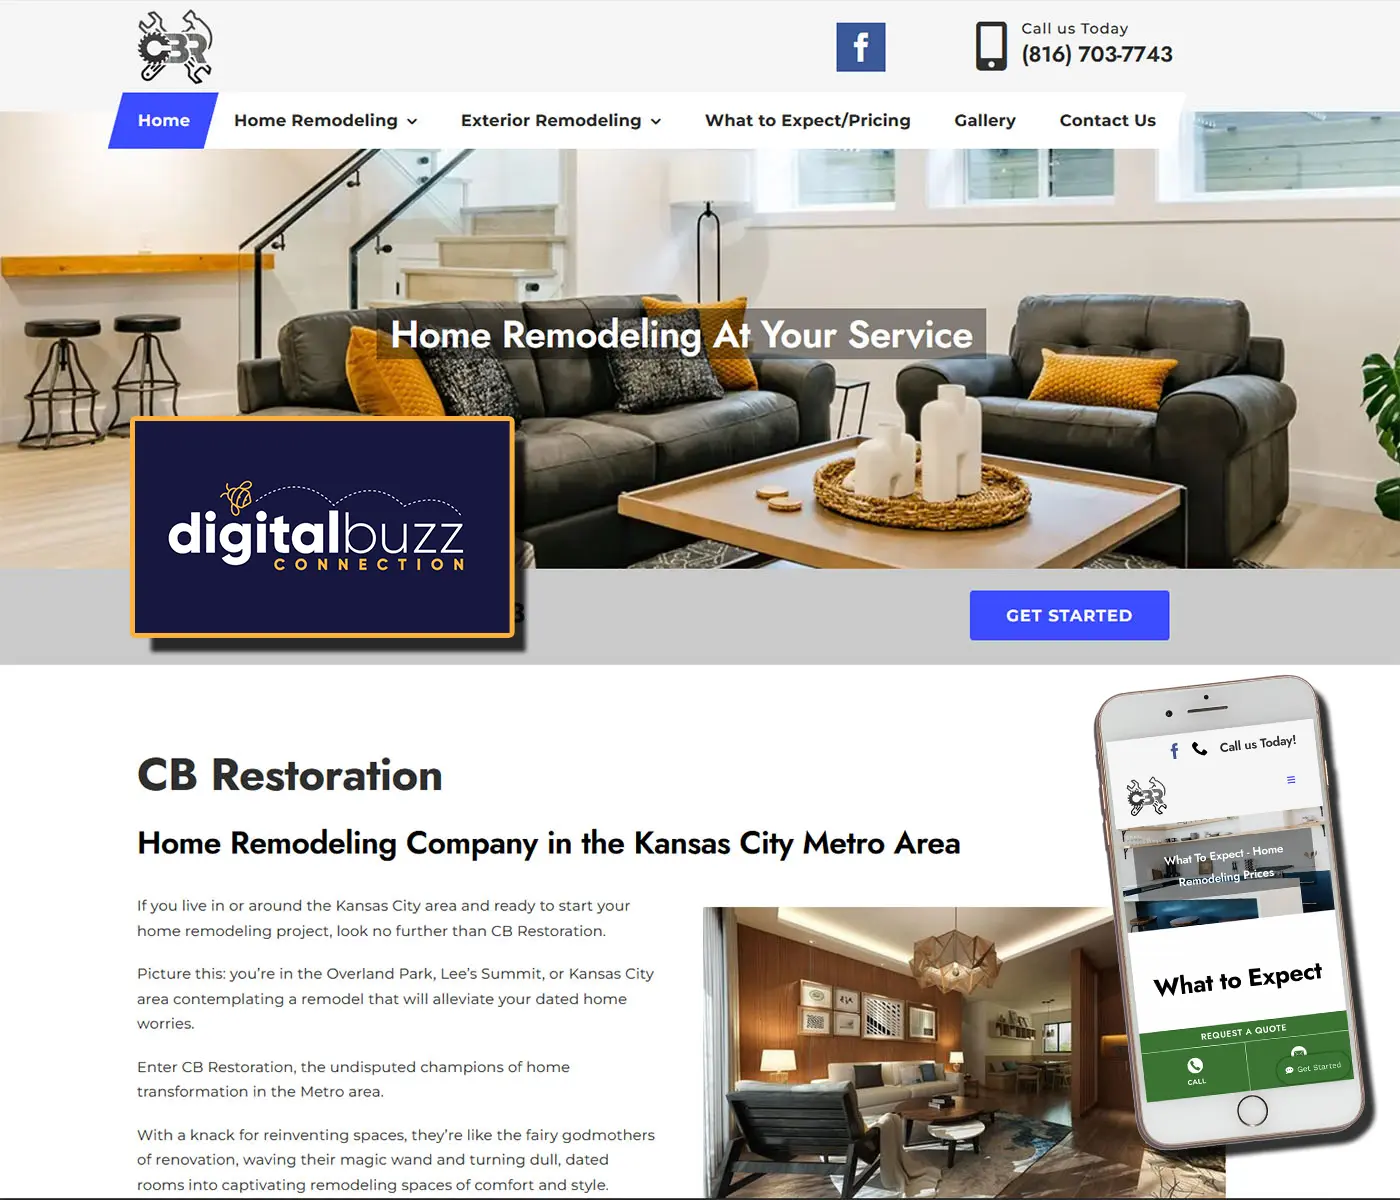 Website: CB Restoration